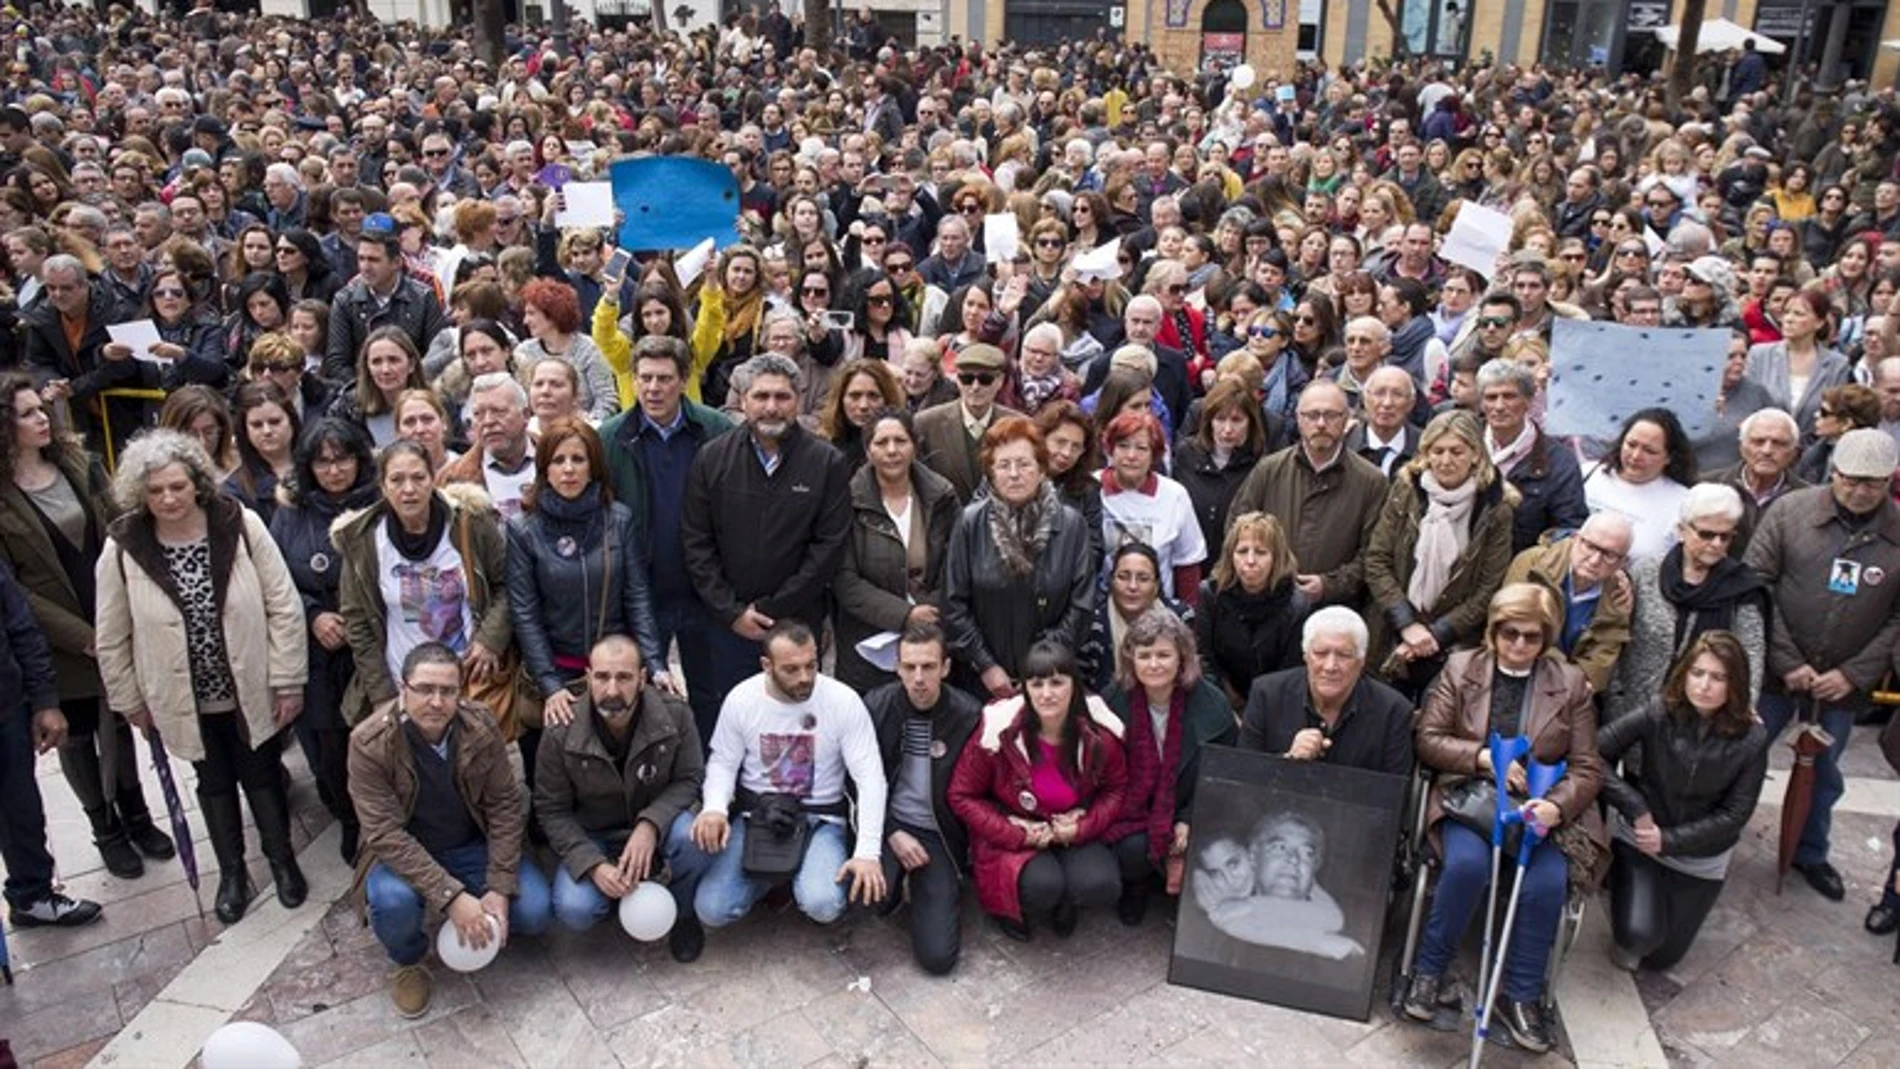 Manifestación por la prisión permanente revisable en Huelva